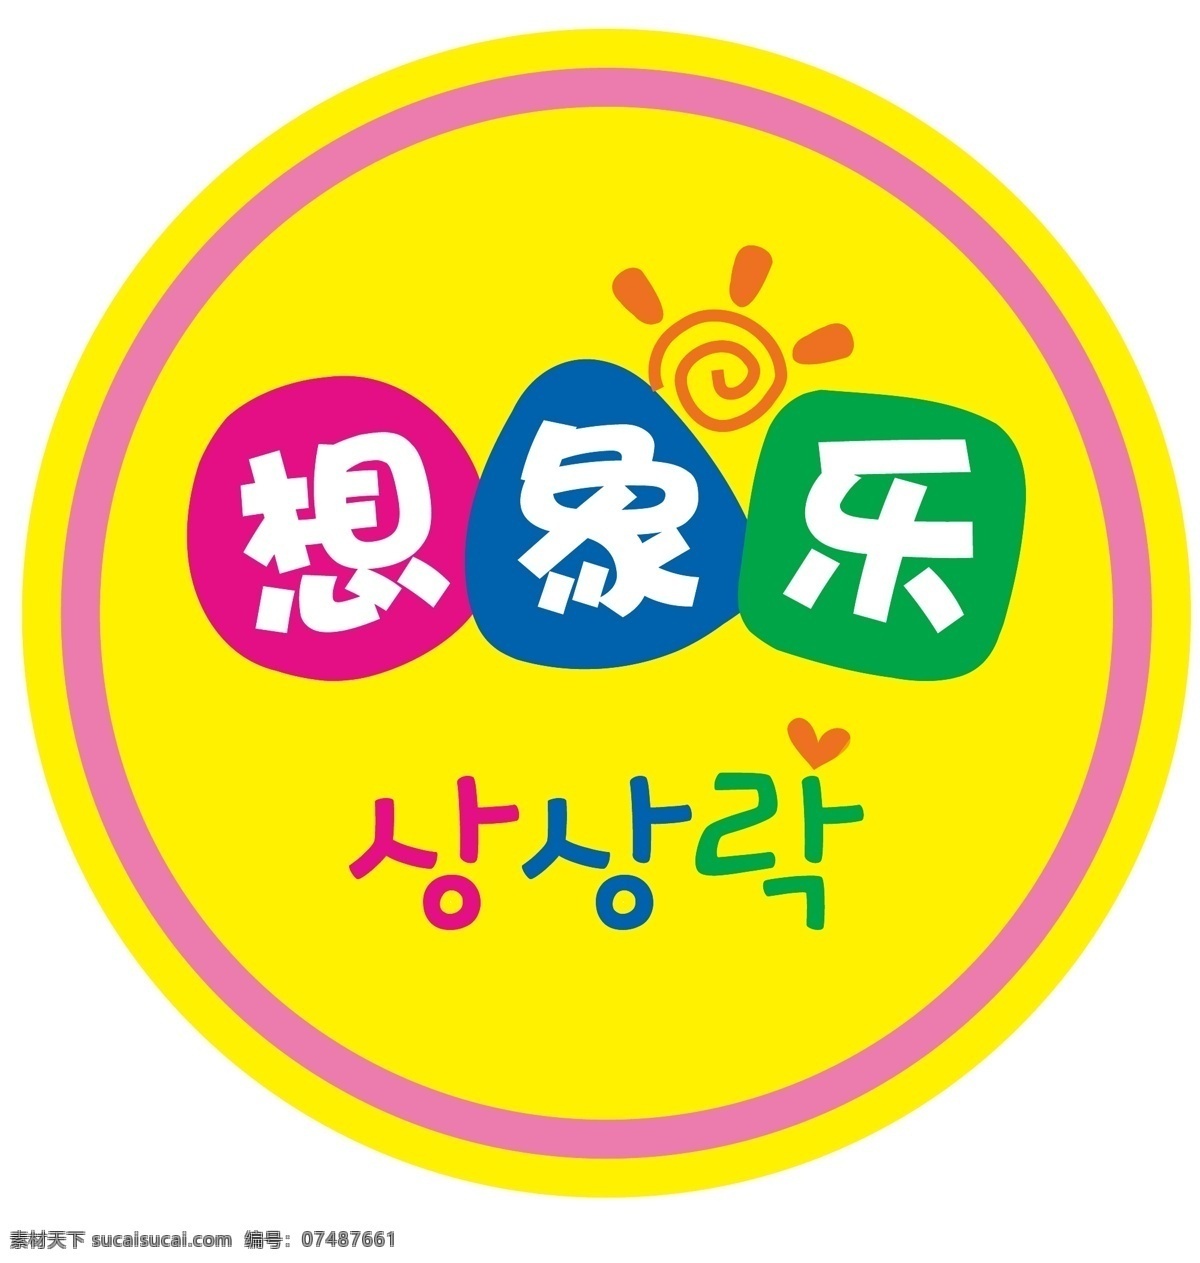 标识标志图标 韩国 品牌教育 企业 logo 标志 幼儿教育 想 象乐 背景 矢量 模板下载 想象乐背景 想象乐 幼儿学校 创意中心 psd源文件